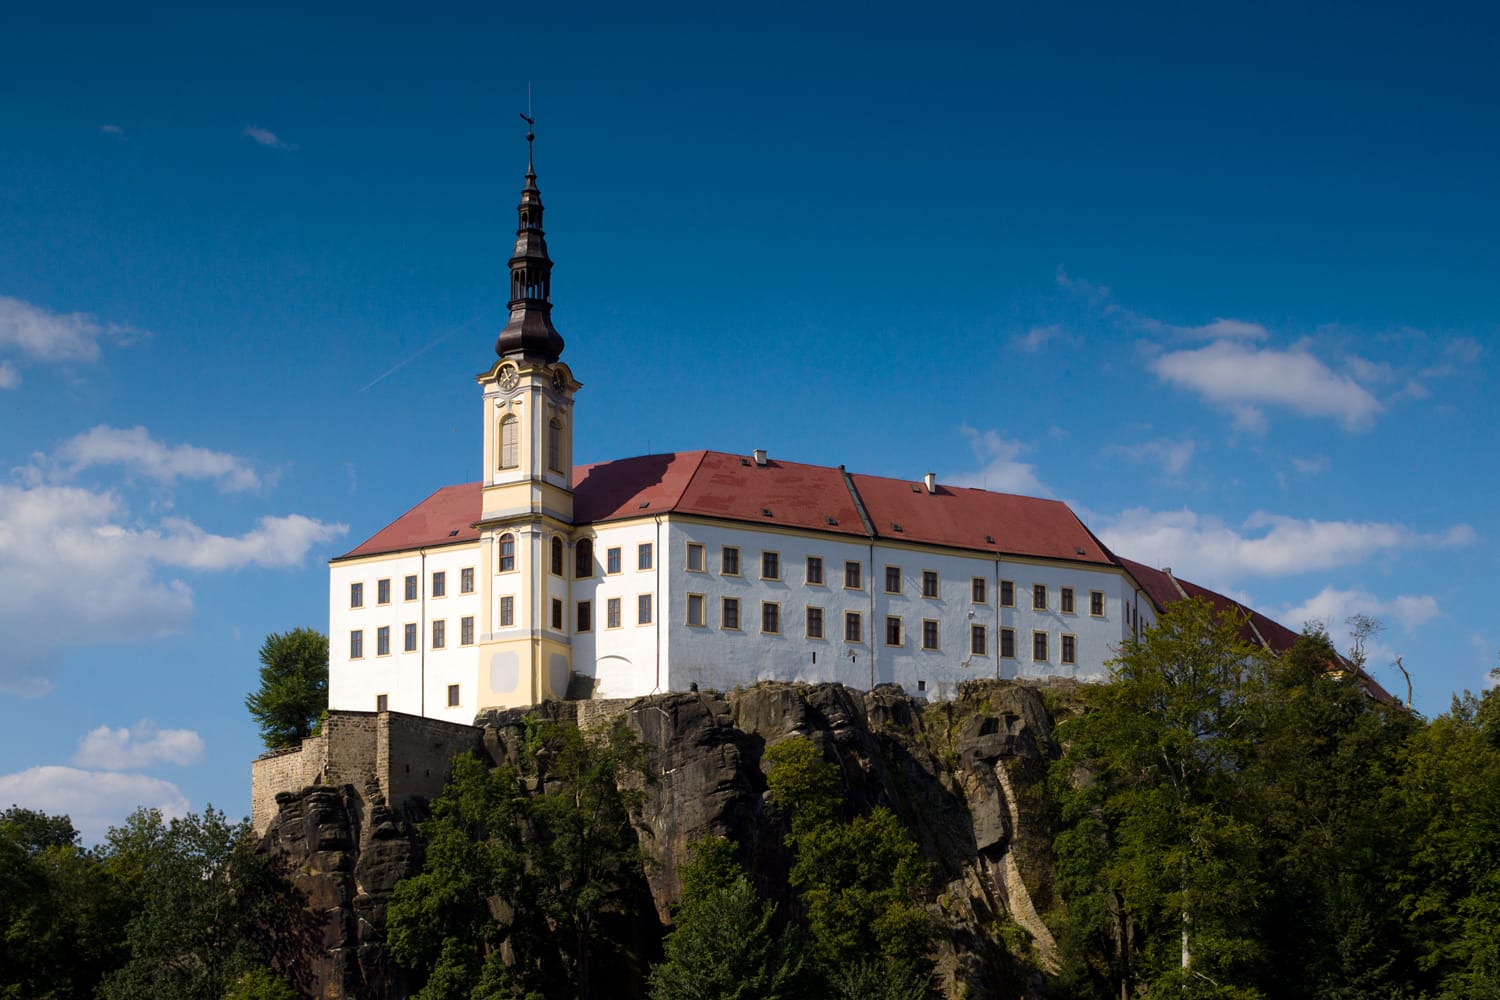 Λευκό πύργο (κάστρο) στο βράχο - Decin, Βοημία, Δημοκρατία της Τσεχίας.